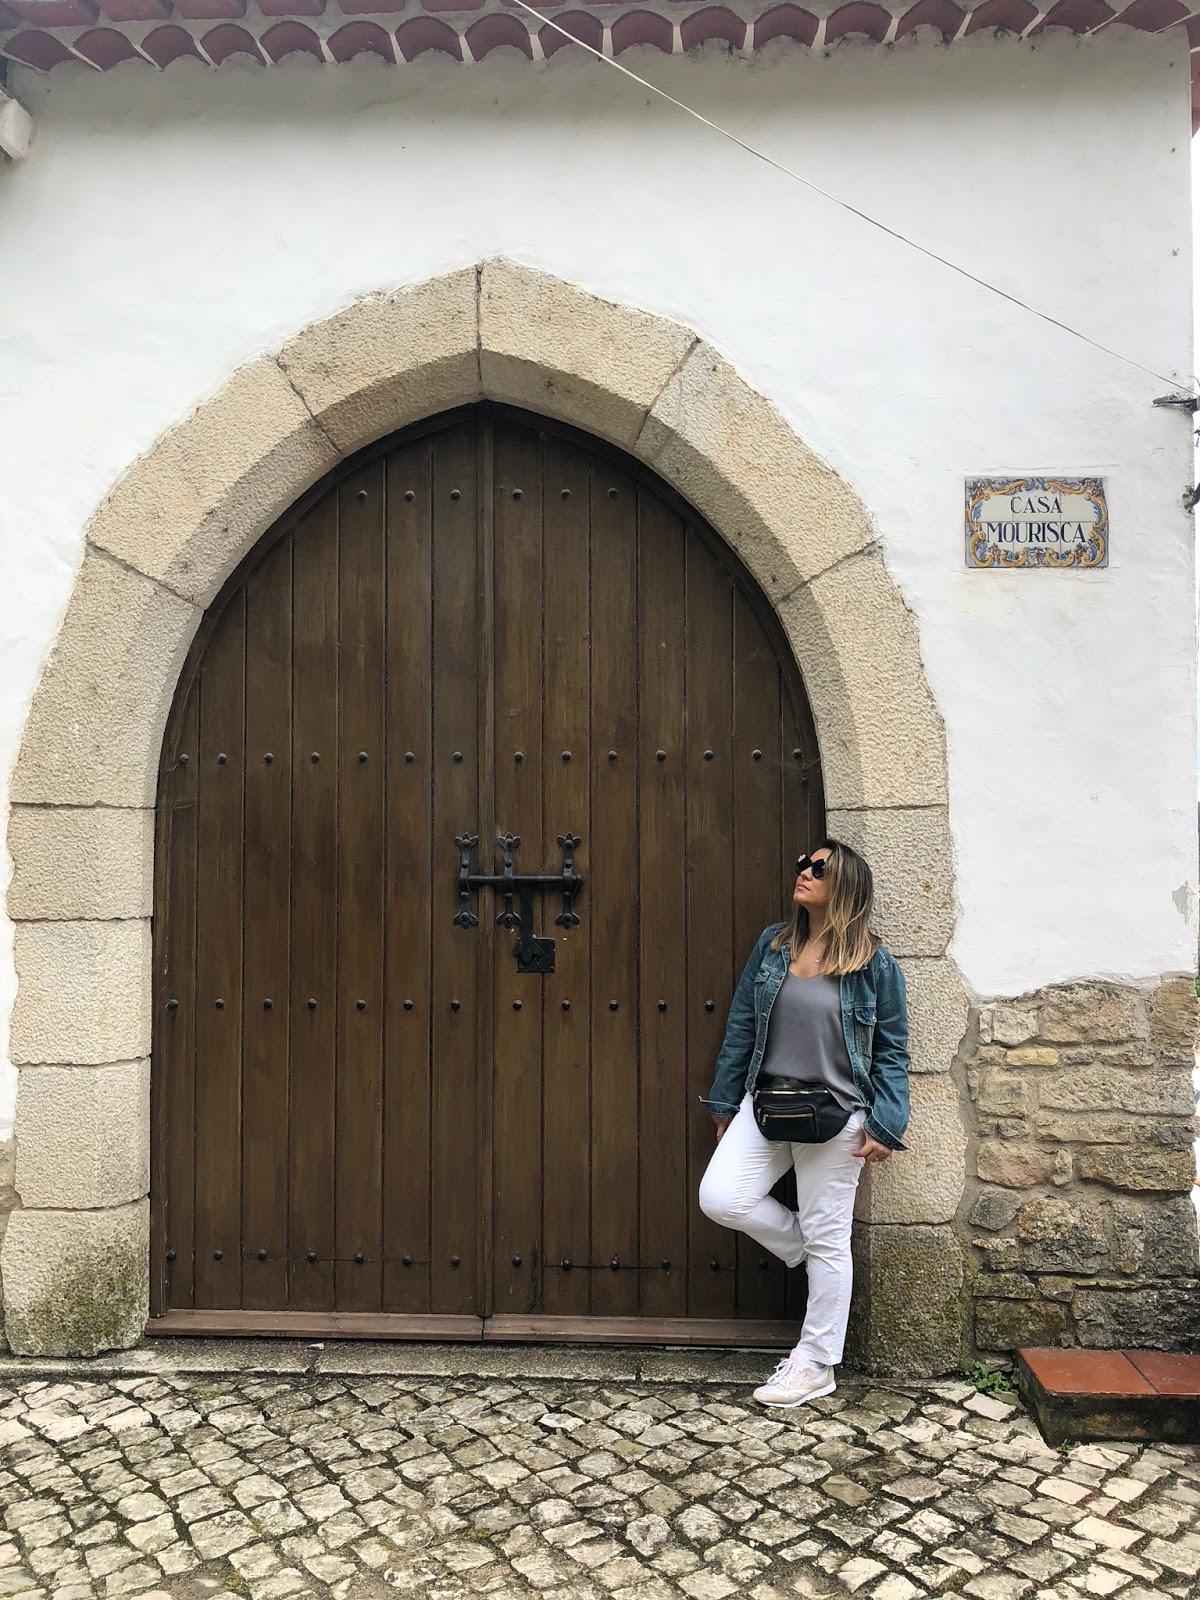 O que usar na Europa {Primavera/ Verão}: veja todos os looks de viagem que usei em Portugal e Espanha 2018